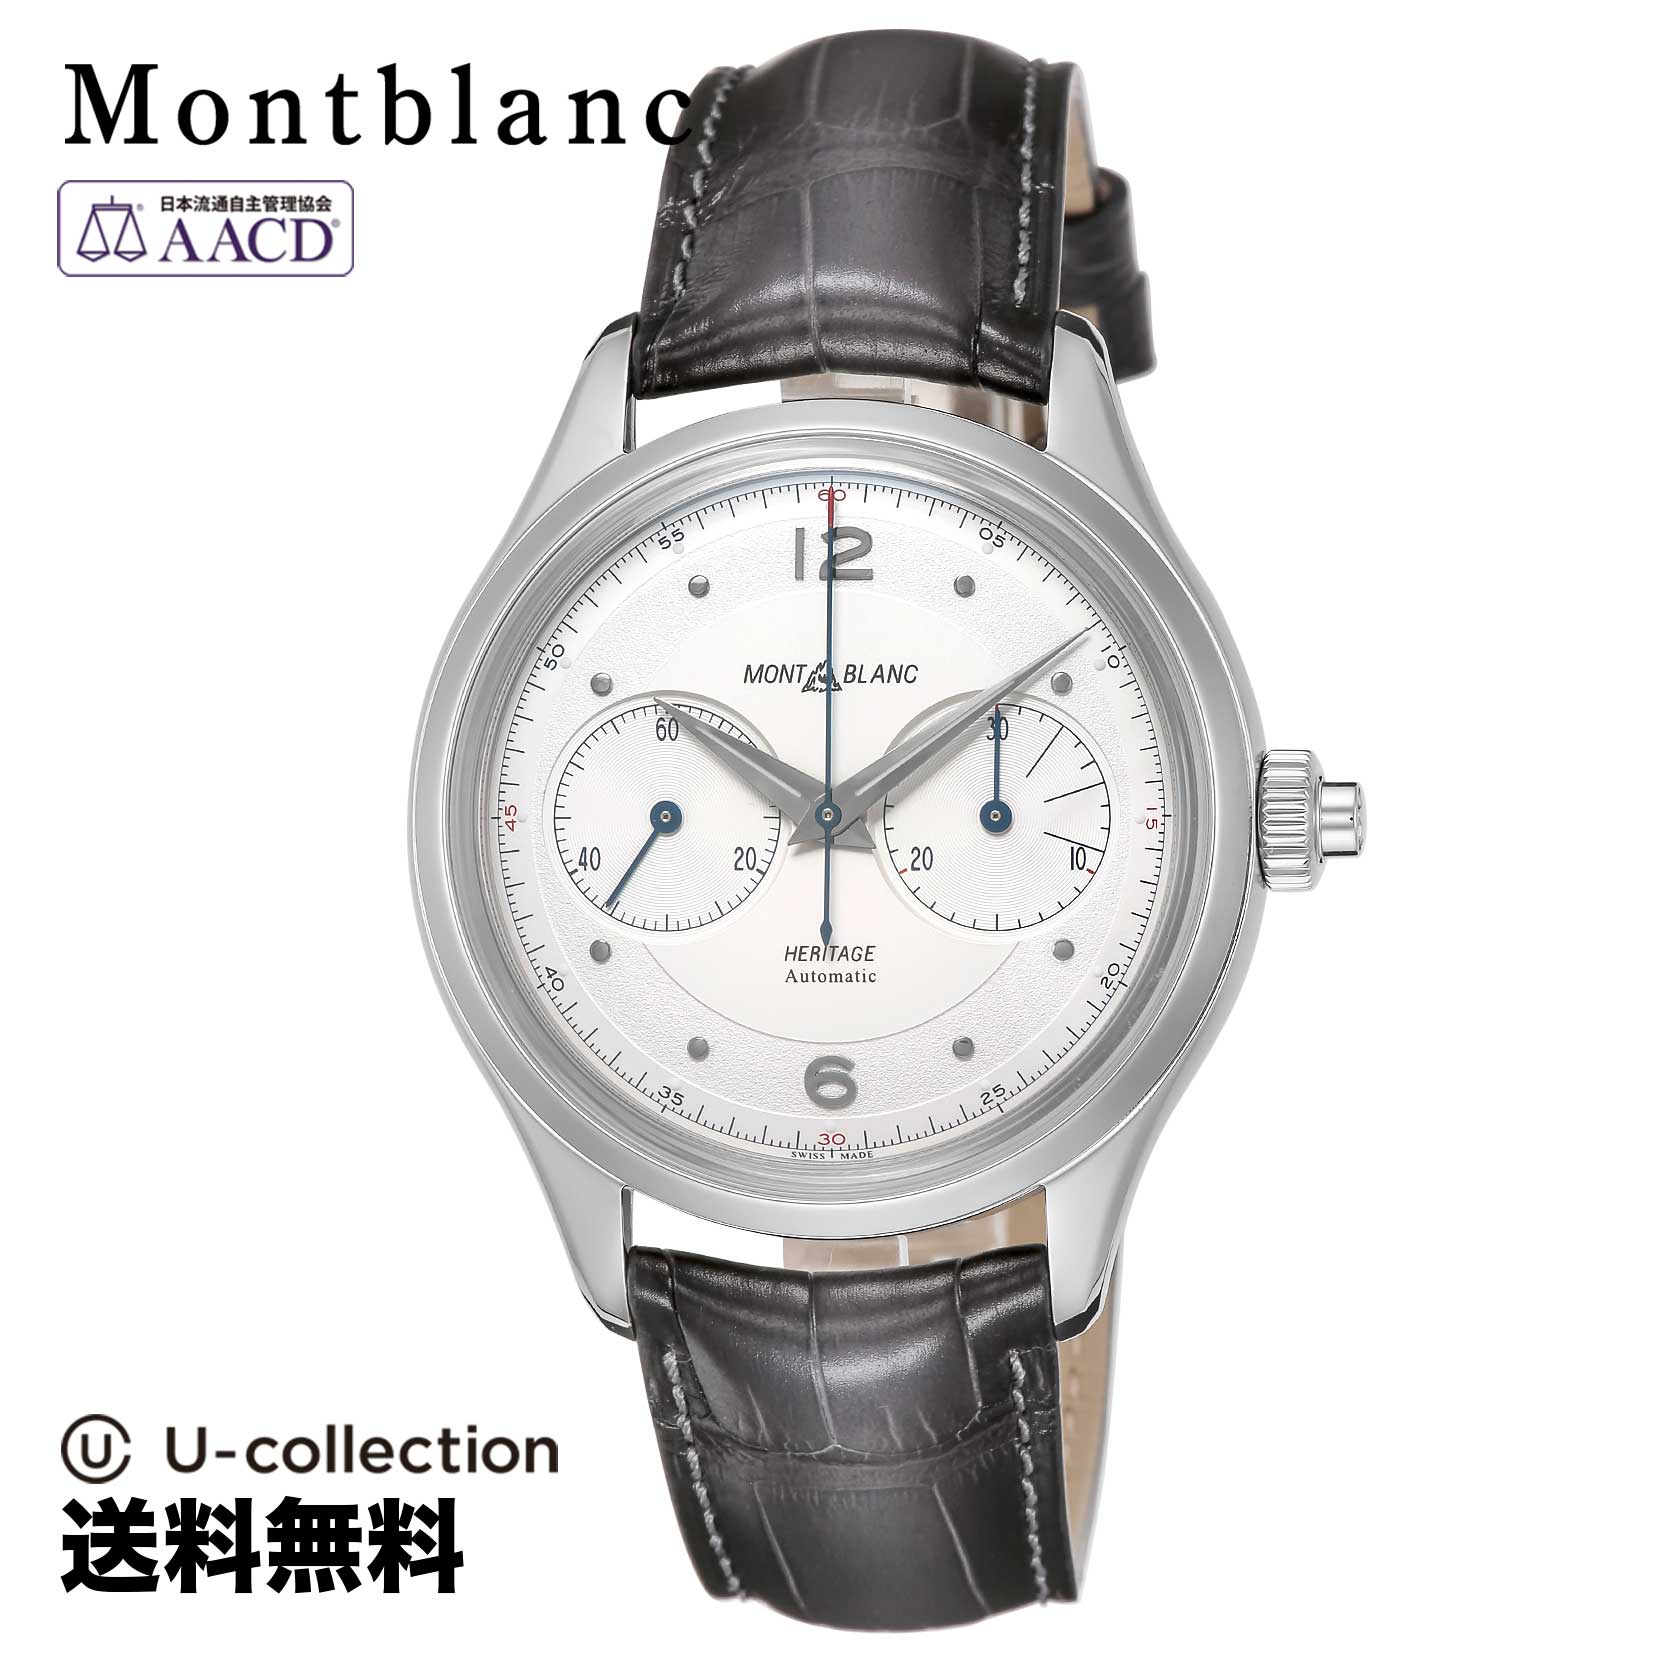 Mont Blanc【腕時計】 Montblanc(モンブラン) HERITAGE / ヘリテイジ メンズ シルバー 自動巻 119951 時計 ブランド